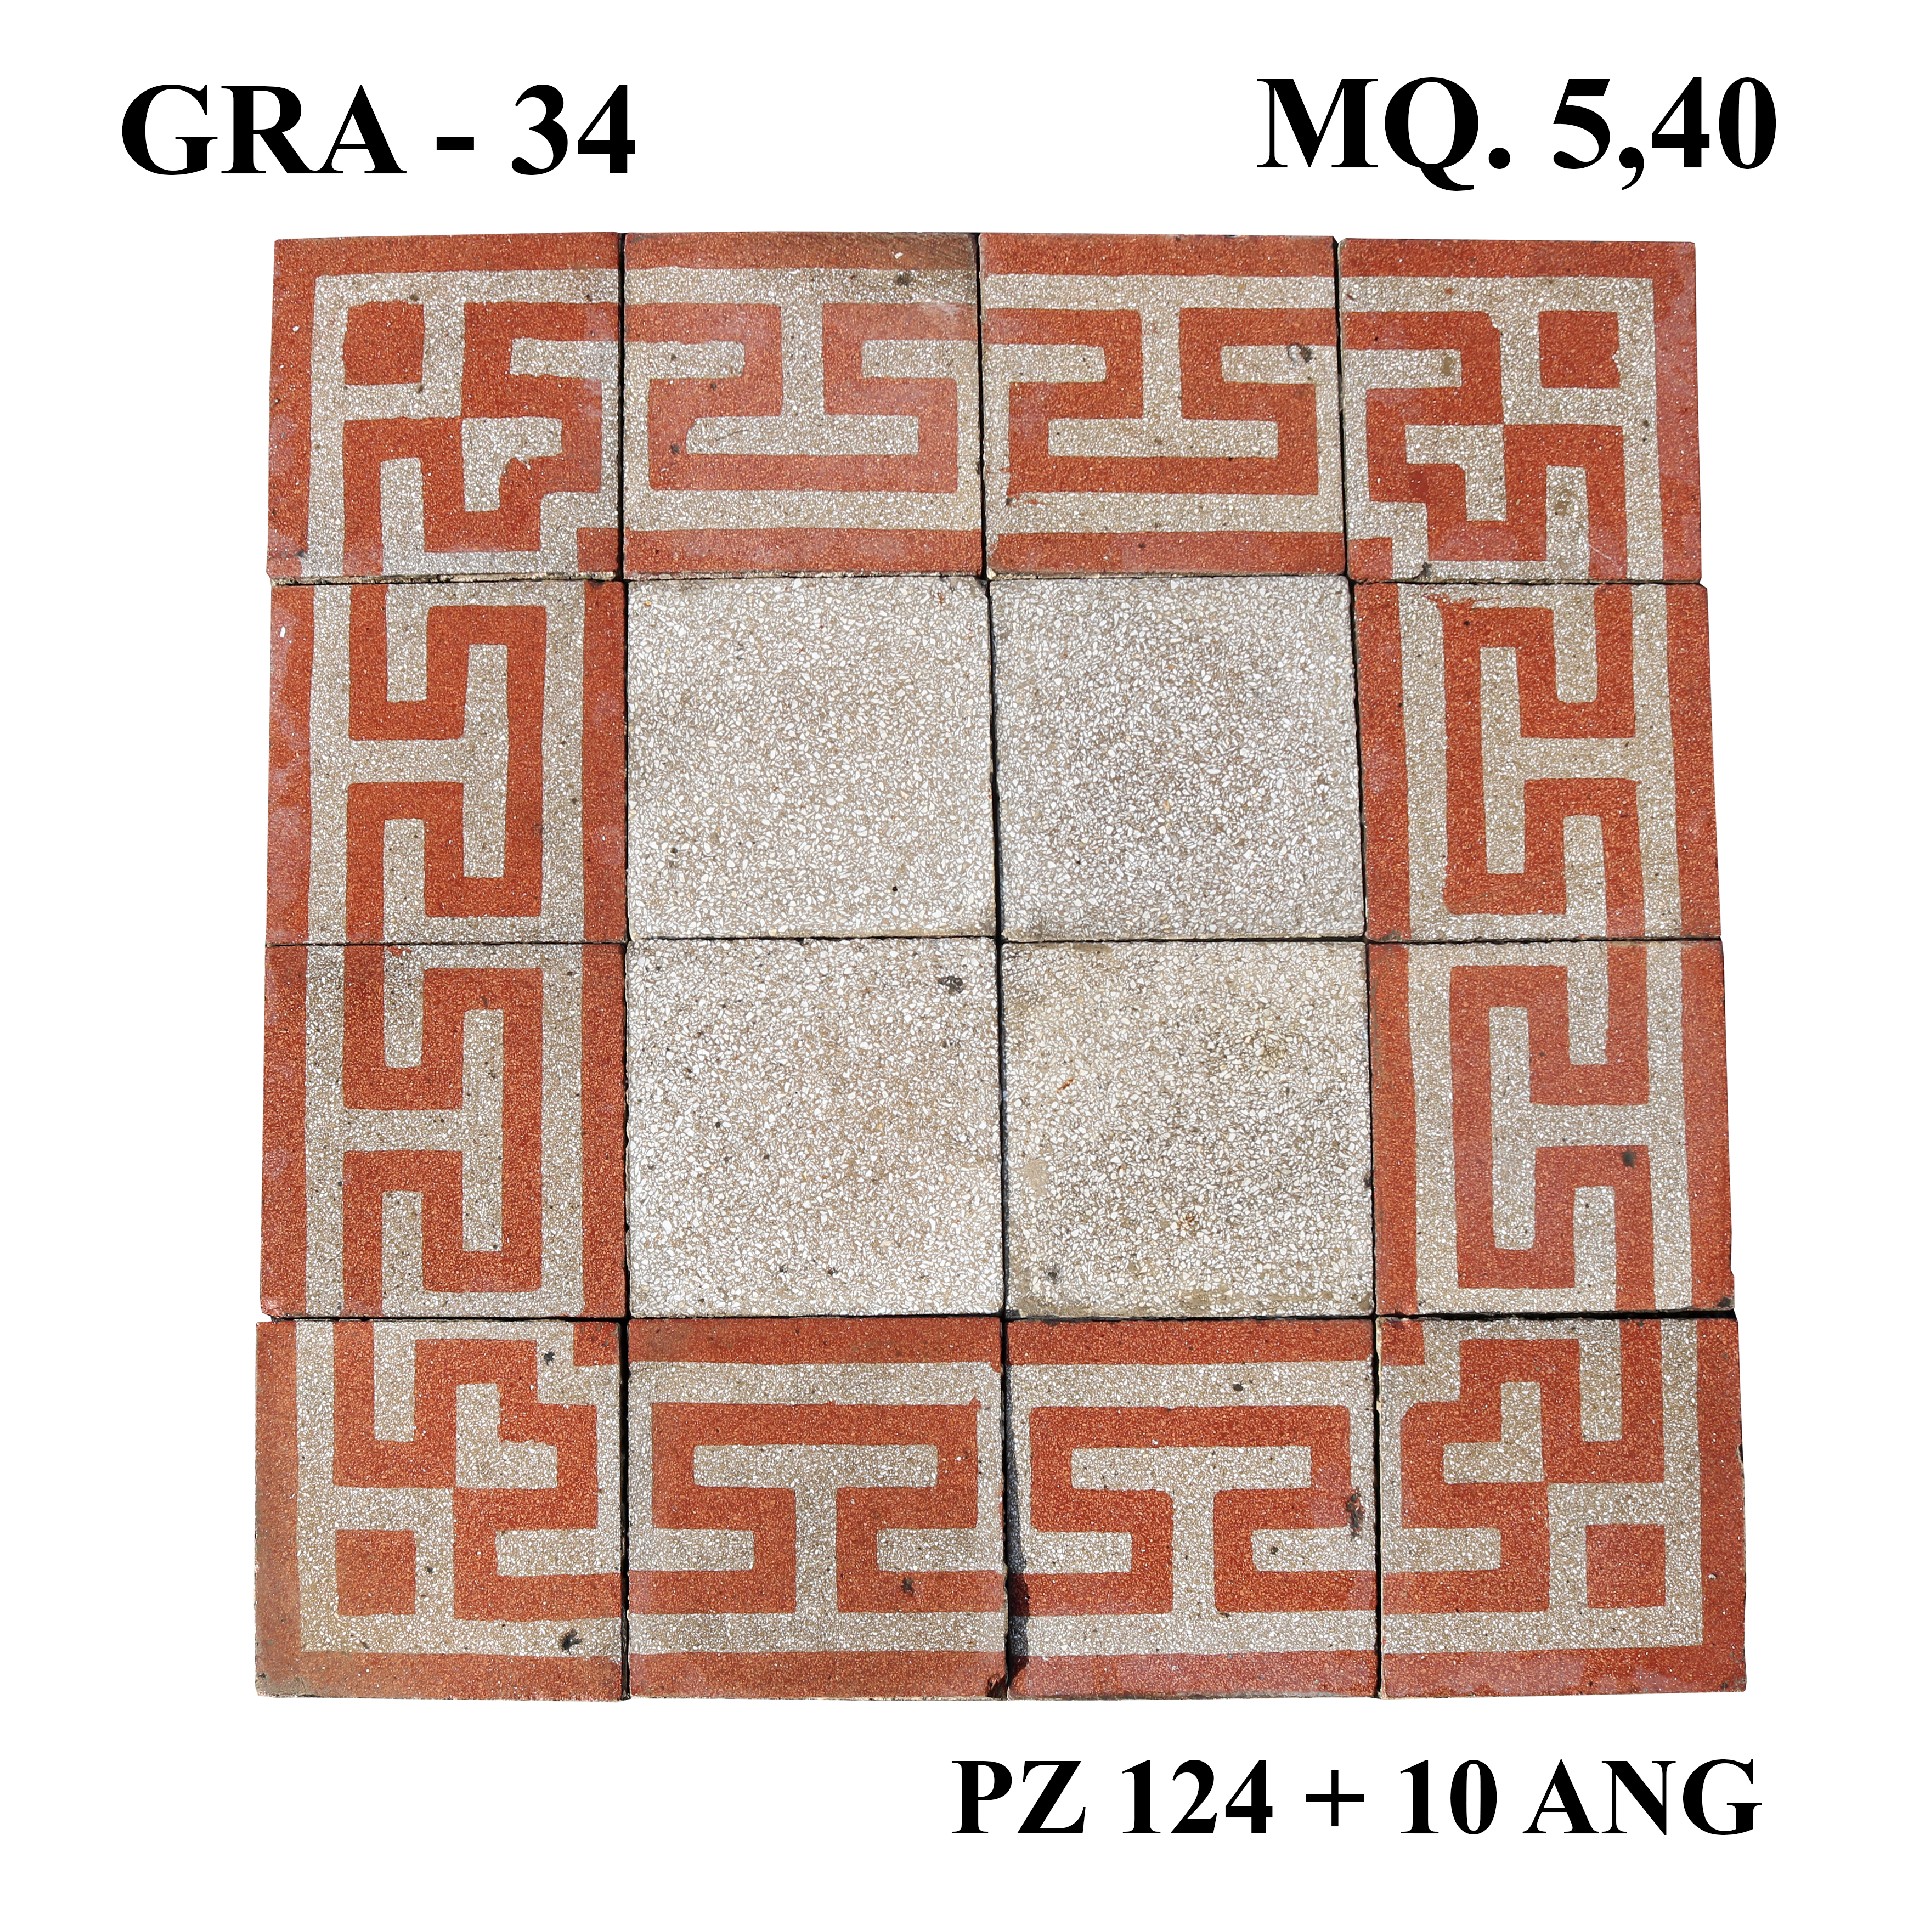 Antica pavimentazione in graniglia cm20,5x20,5 - Cementine e Graniglie - Pavimentazioni Antiche - Prodotti - Antichità Fiorillo